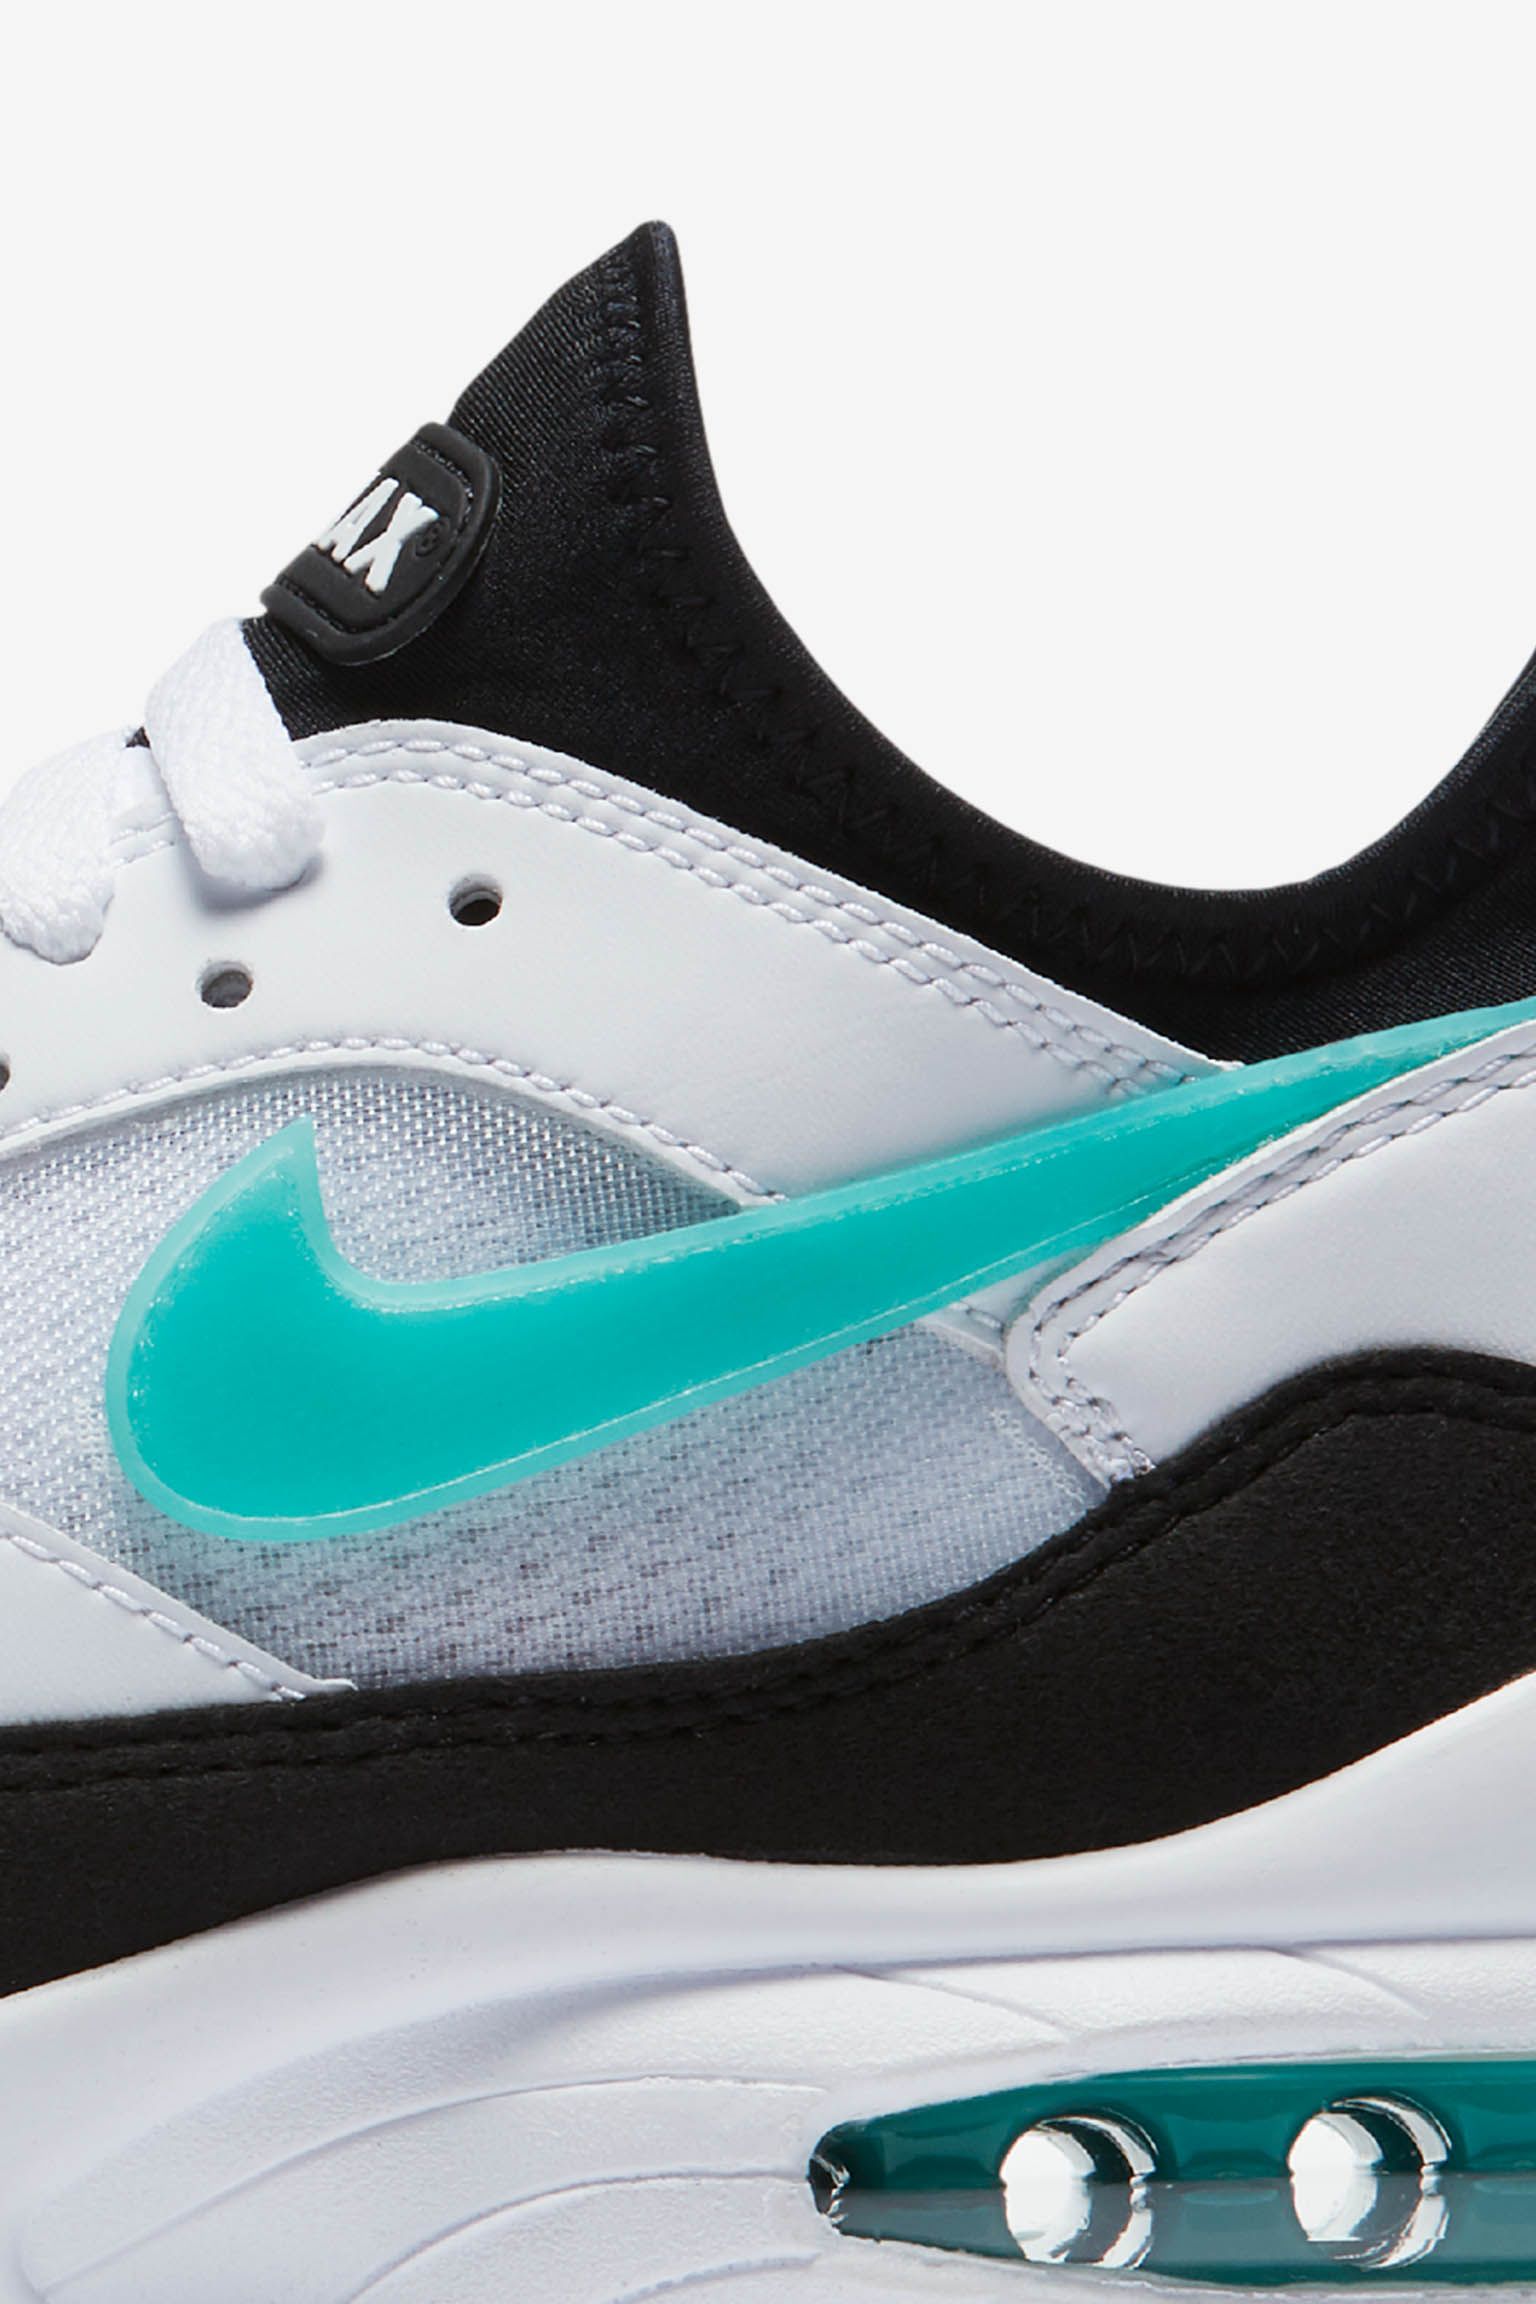 Egern tro på Mellemøsten Nike Women's Air Max 93 'White & Sport Turquoise' Release Date. Nike SNKRS